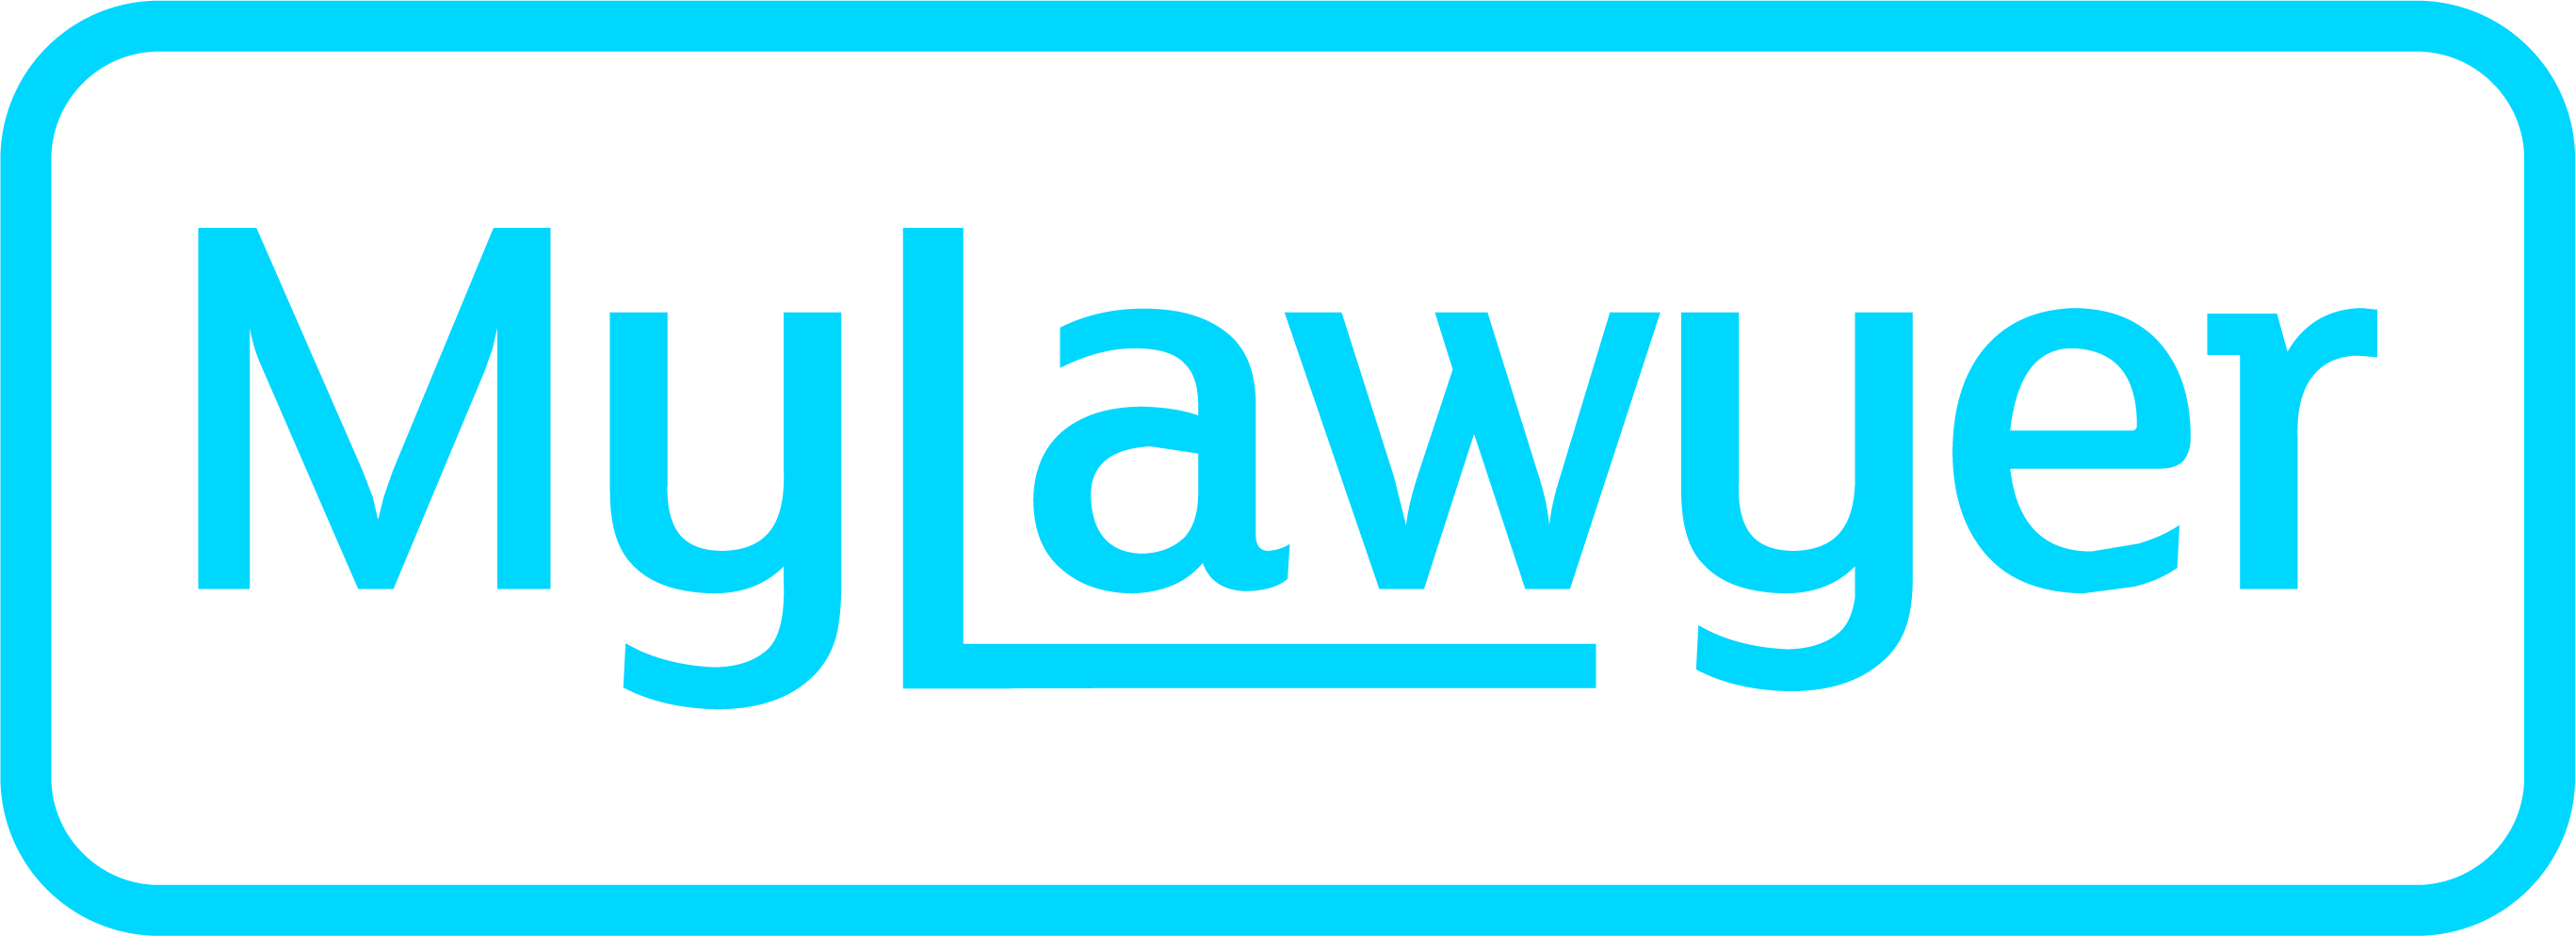 MyLawyer logo